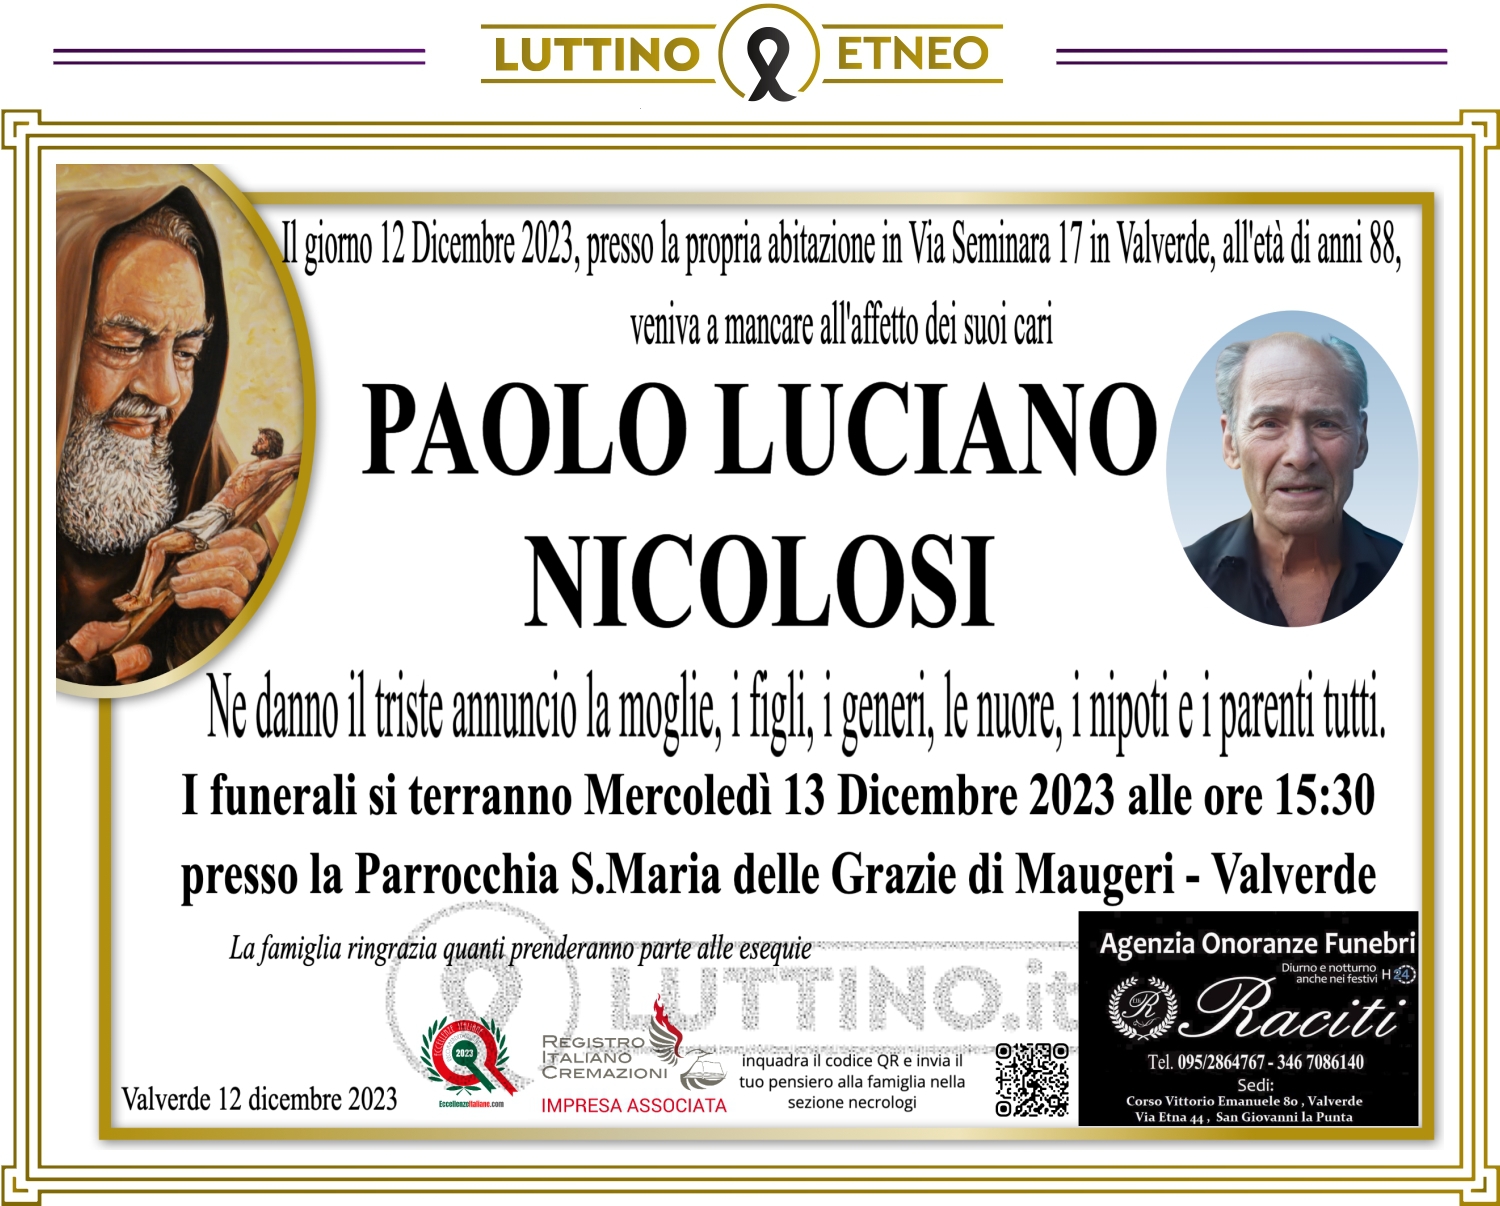 Paolo Luciano Nicolosi